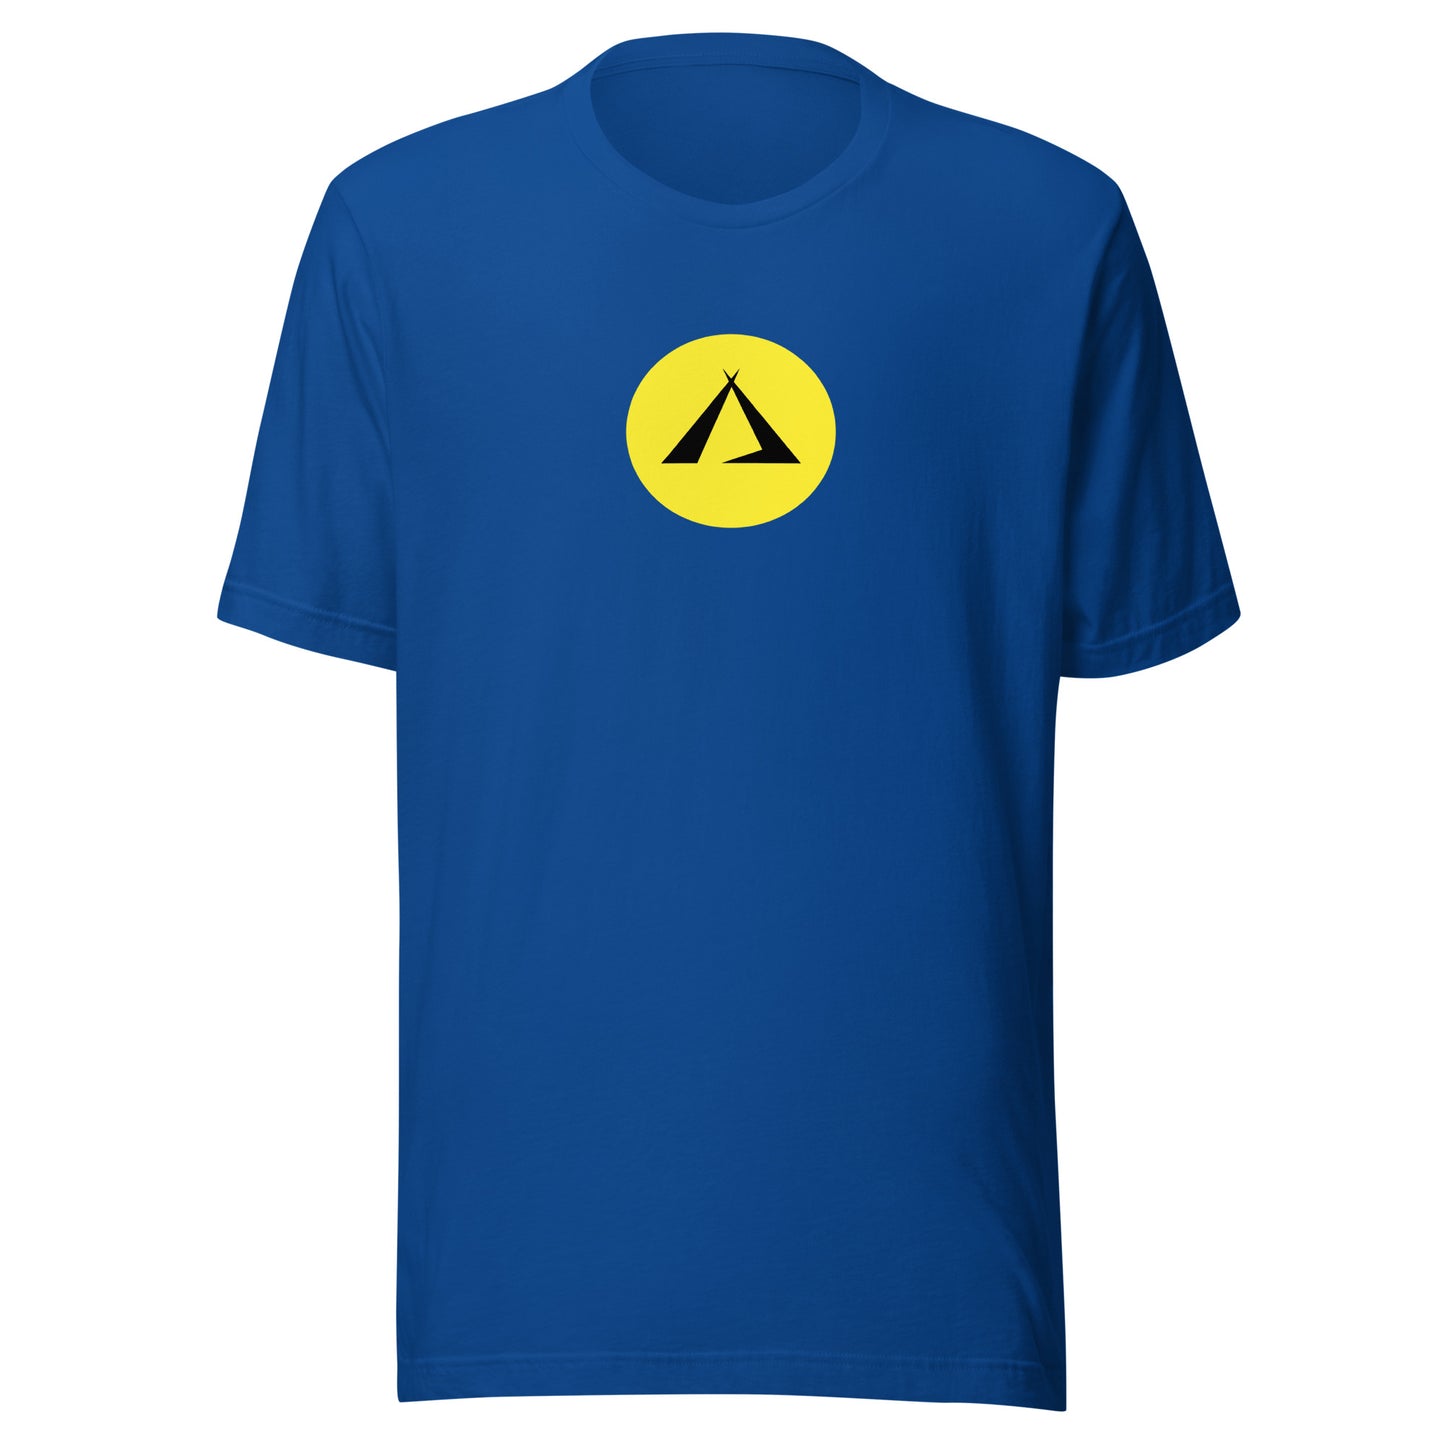 ANOYNTD [TEEPEE] Series Unisex t-shirt